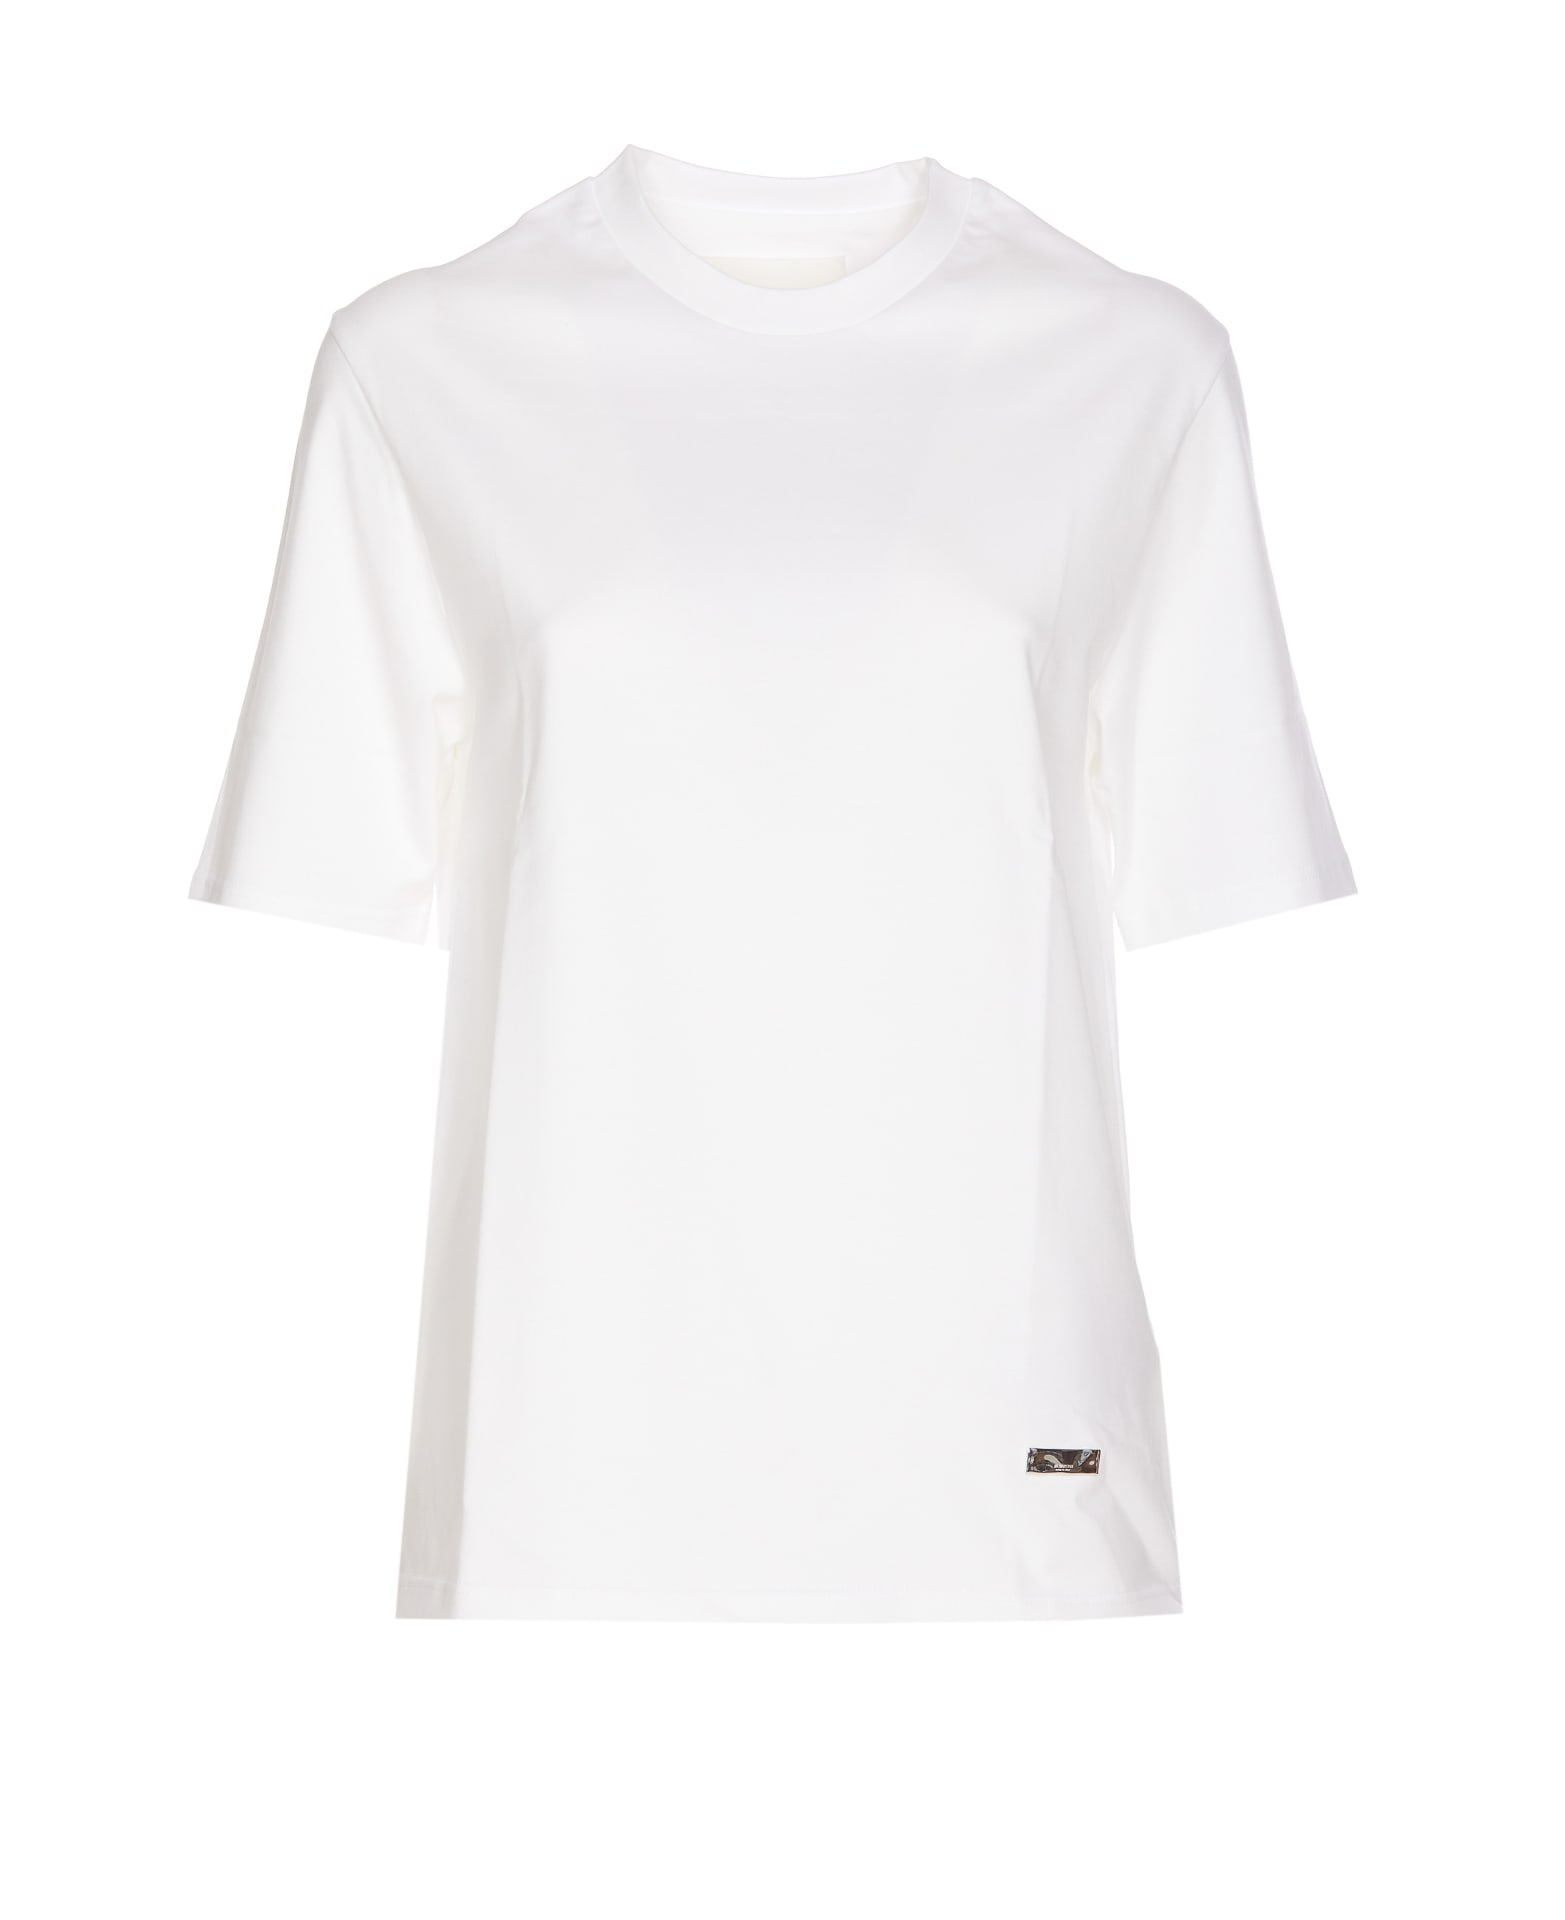 Jil Sander Logo T-shirt In White